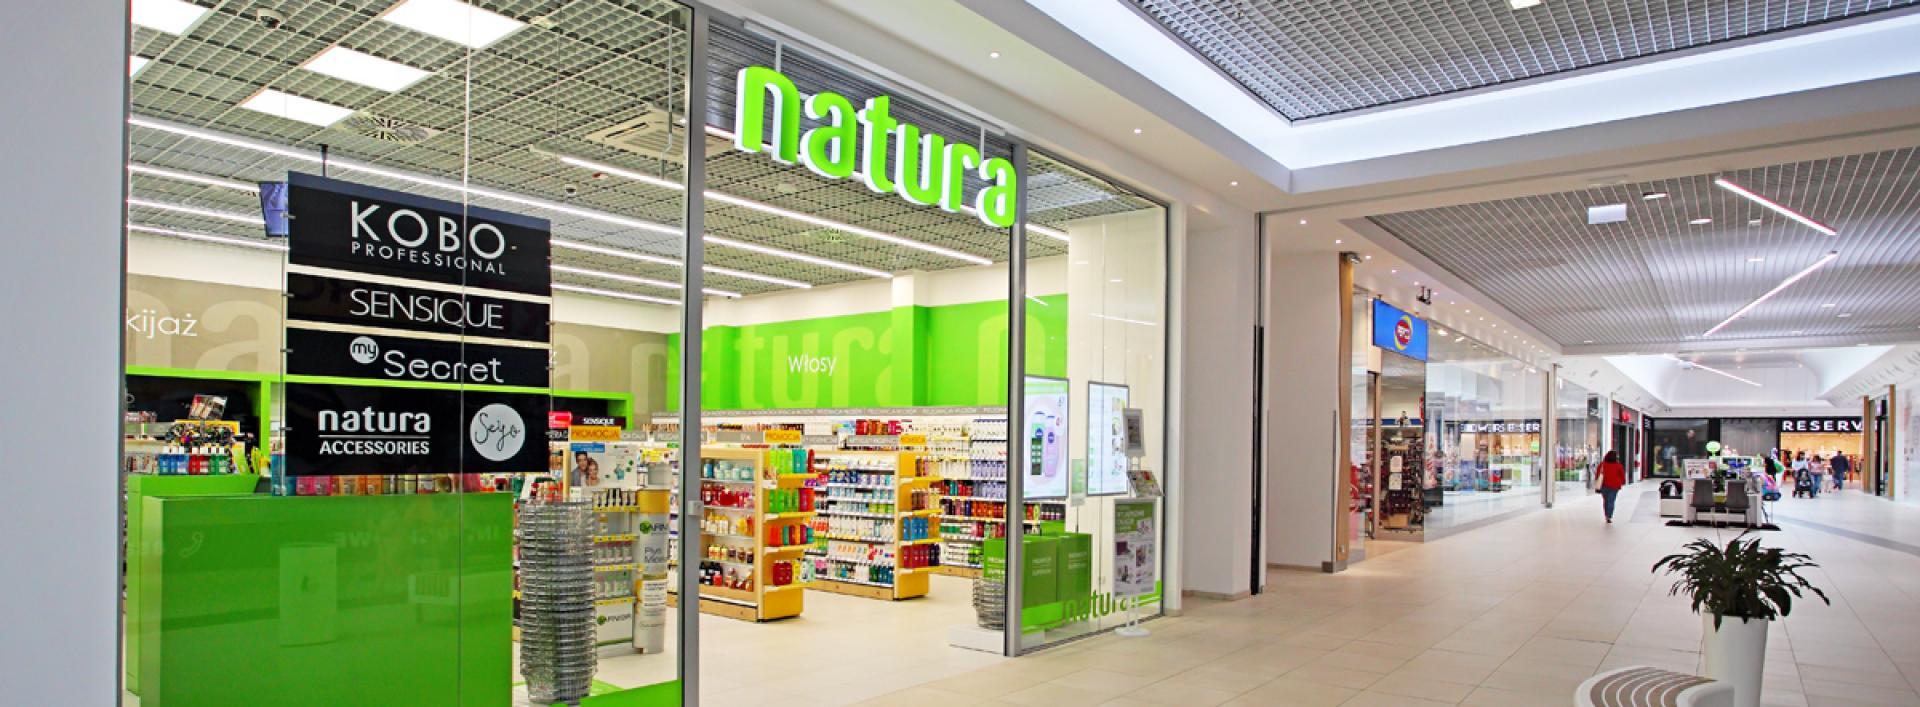 Drogerie Natura - sprzedaż rośnie, szczególnie dobre wyniki e-commerce